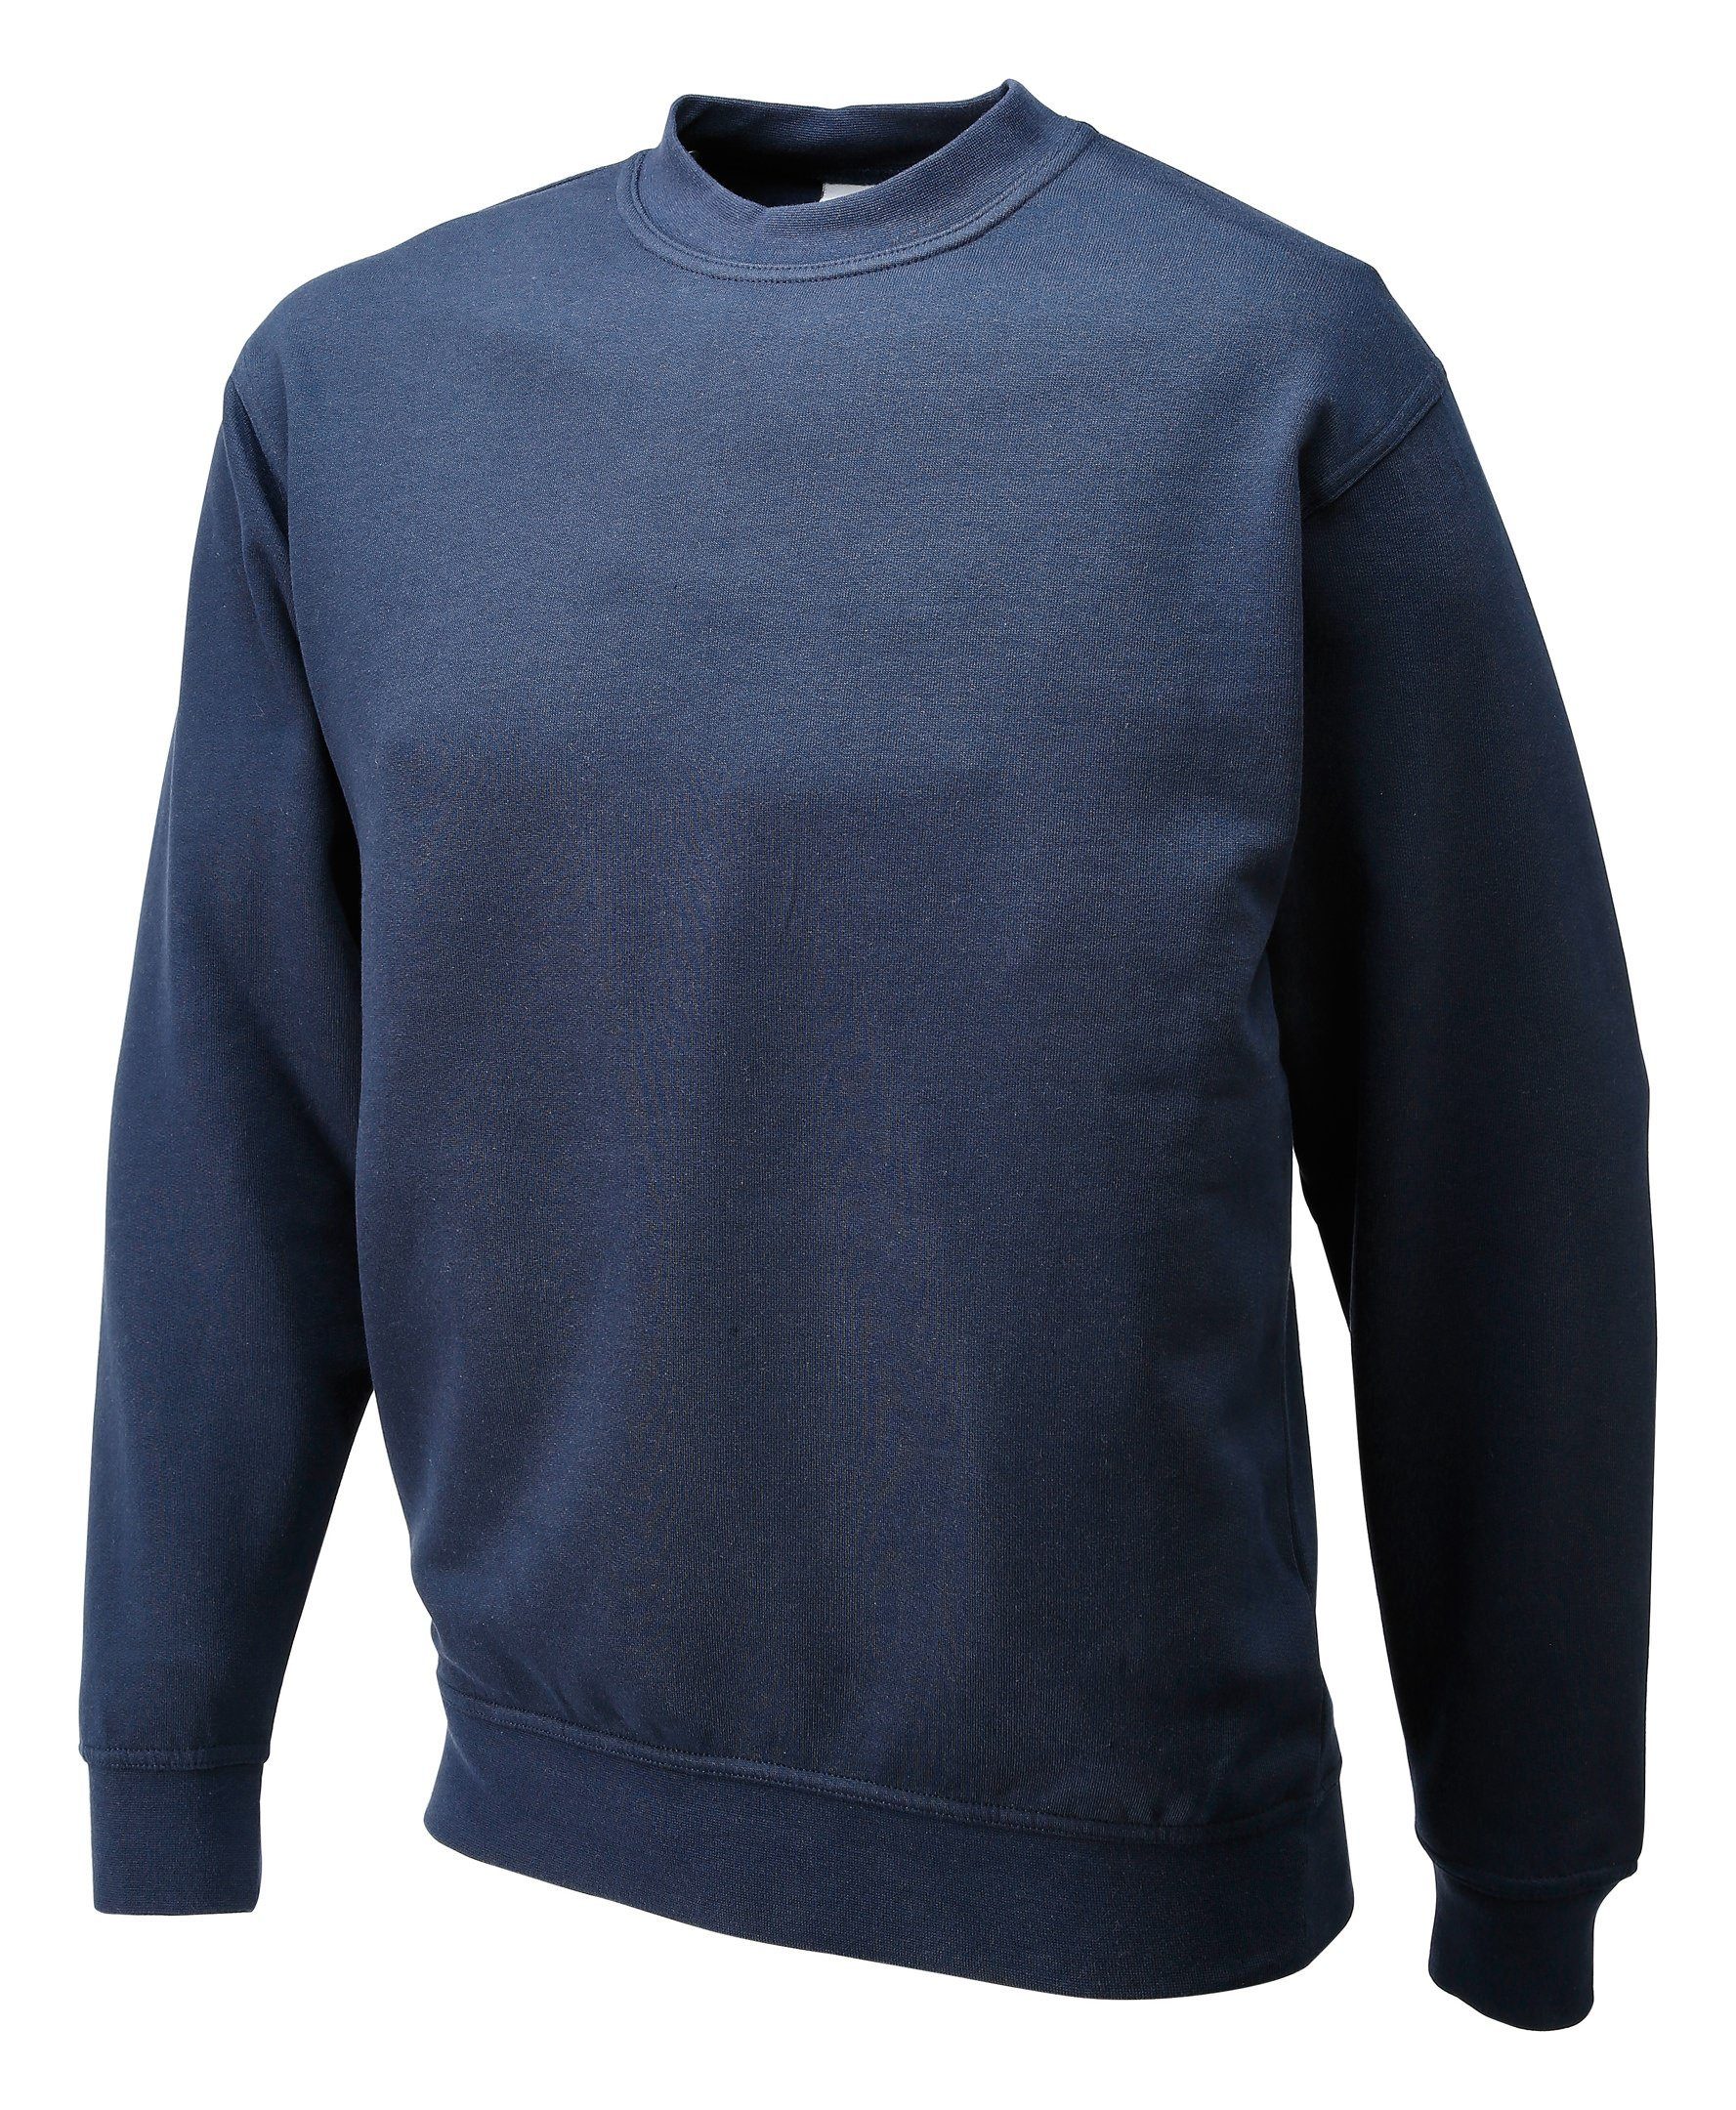 Promodoro Sweatshirt Größe XL navy